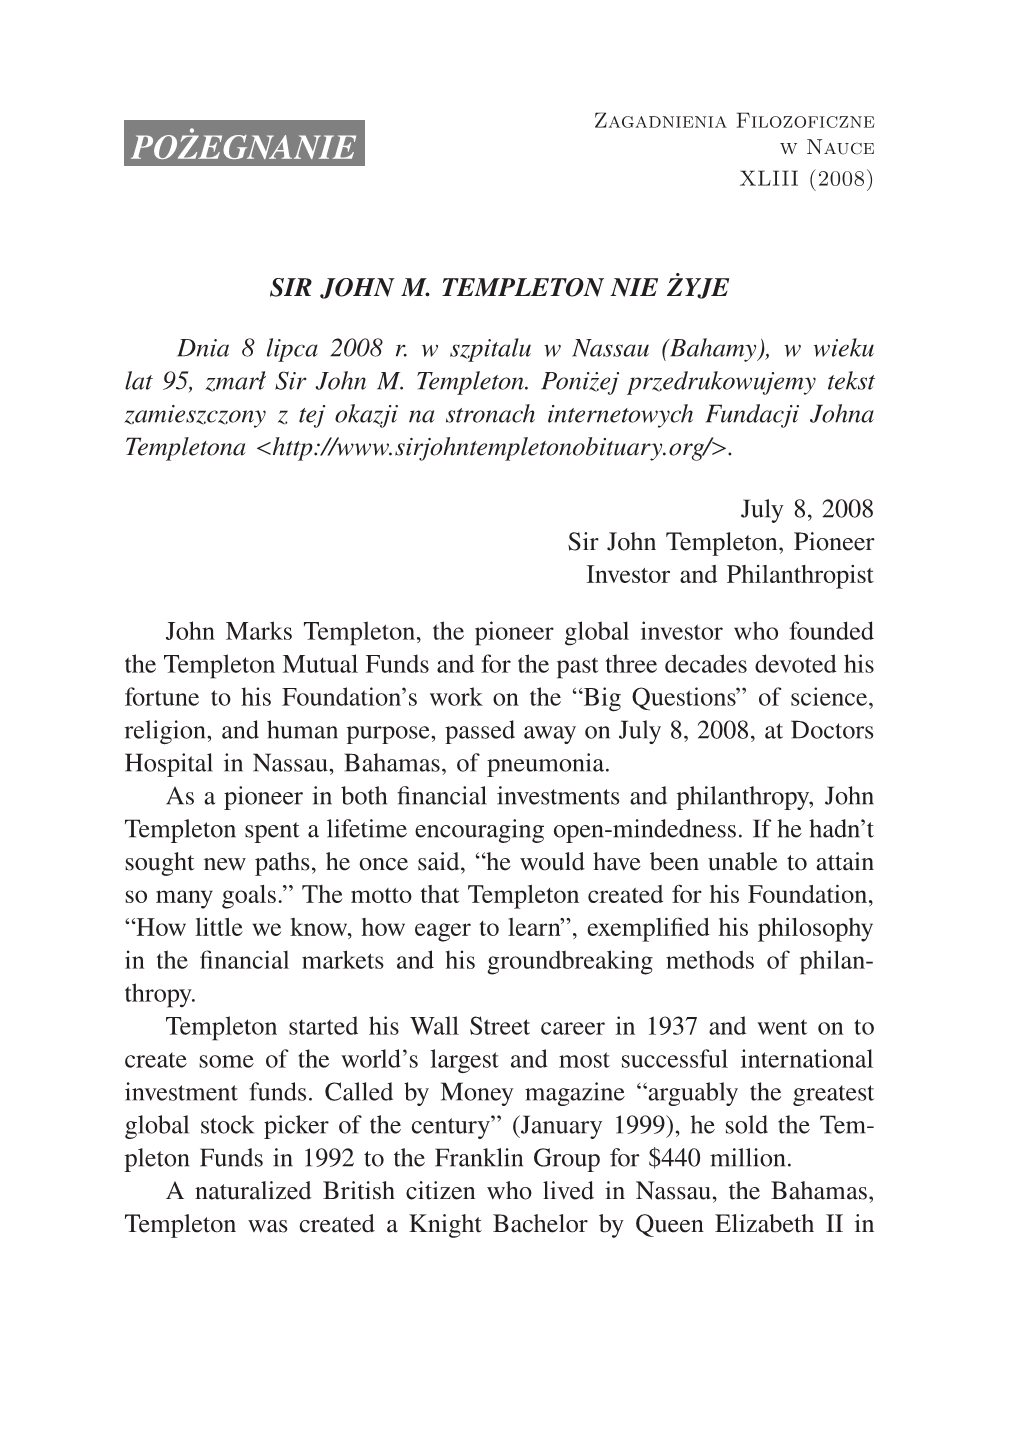 Sir John M. Templeton Has Passed Away